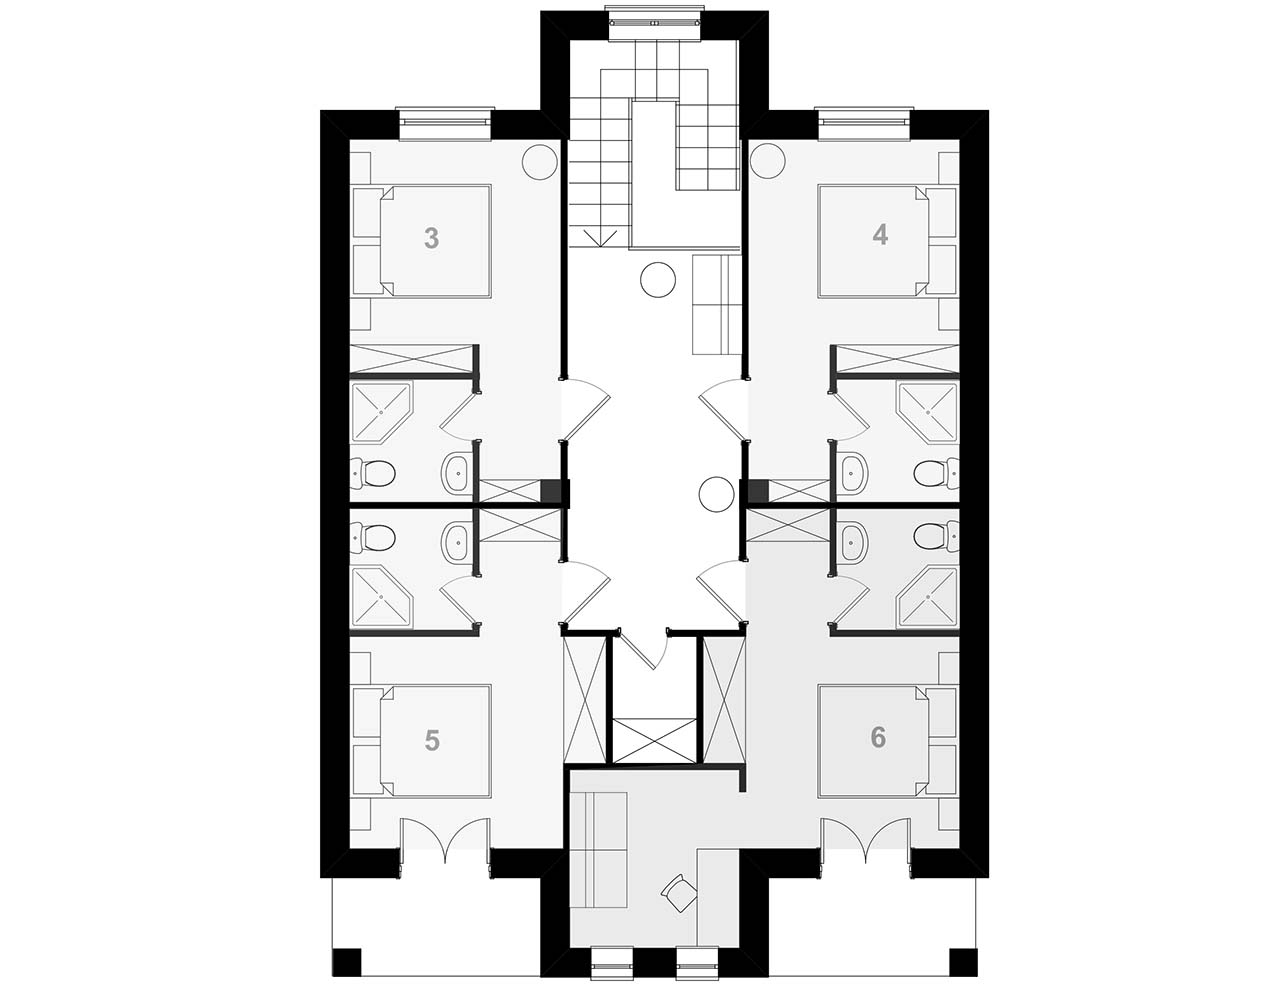 второй этаж - планировка маленького мотеля